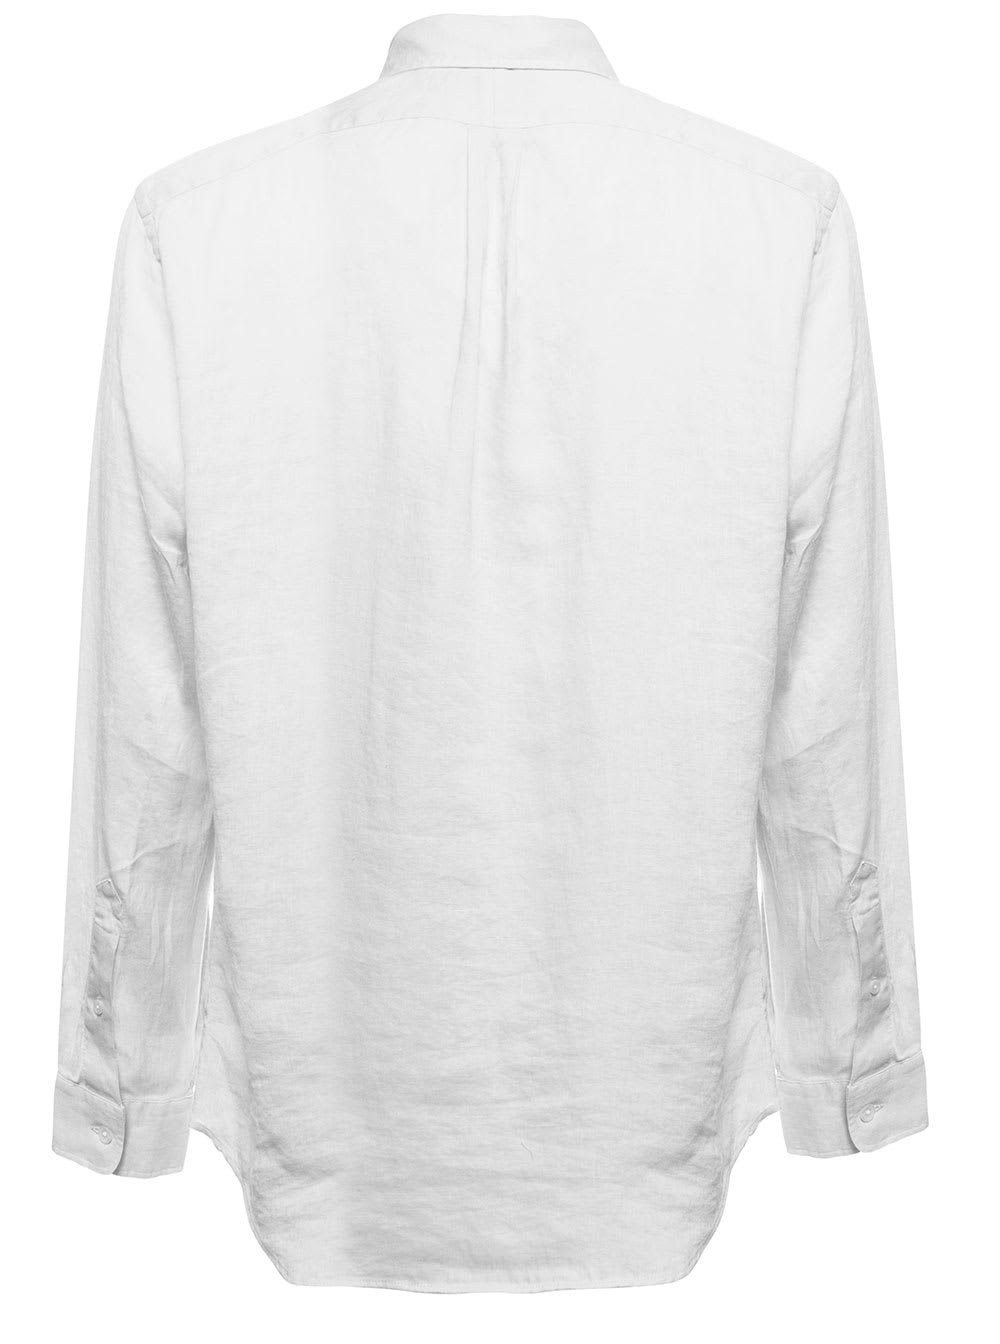 Shop Ralph Lauren Man S White Linen Shirt With Logo